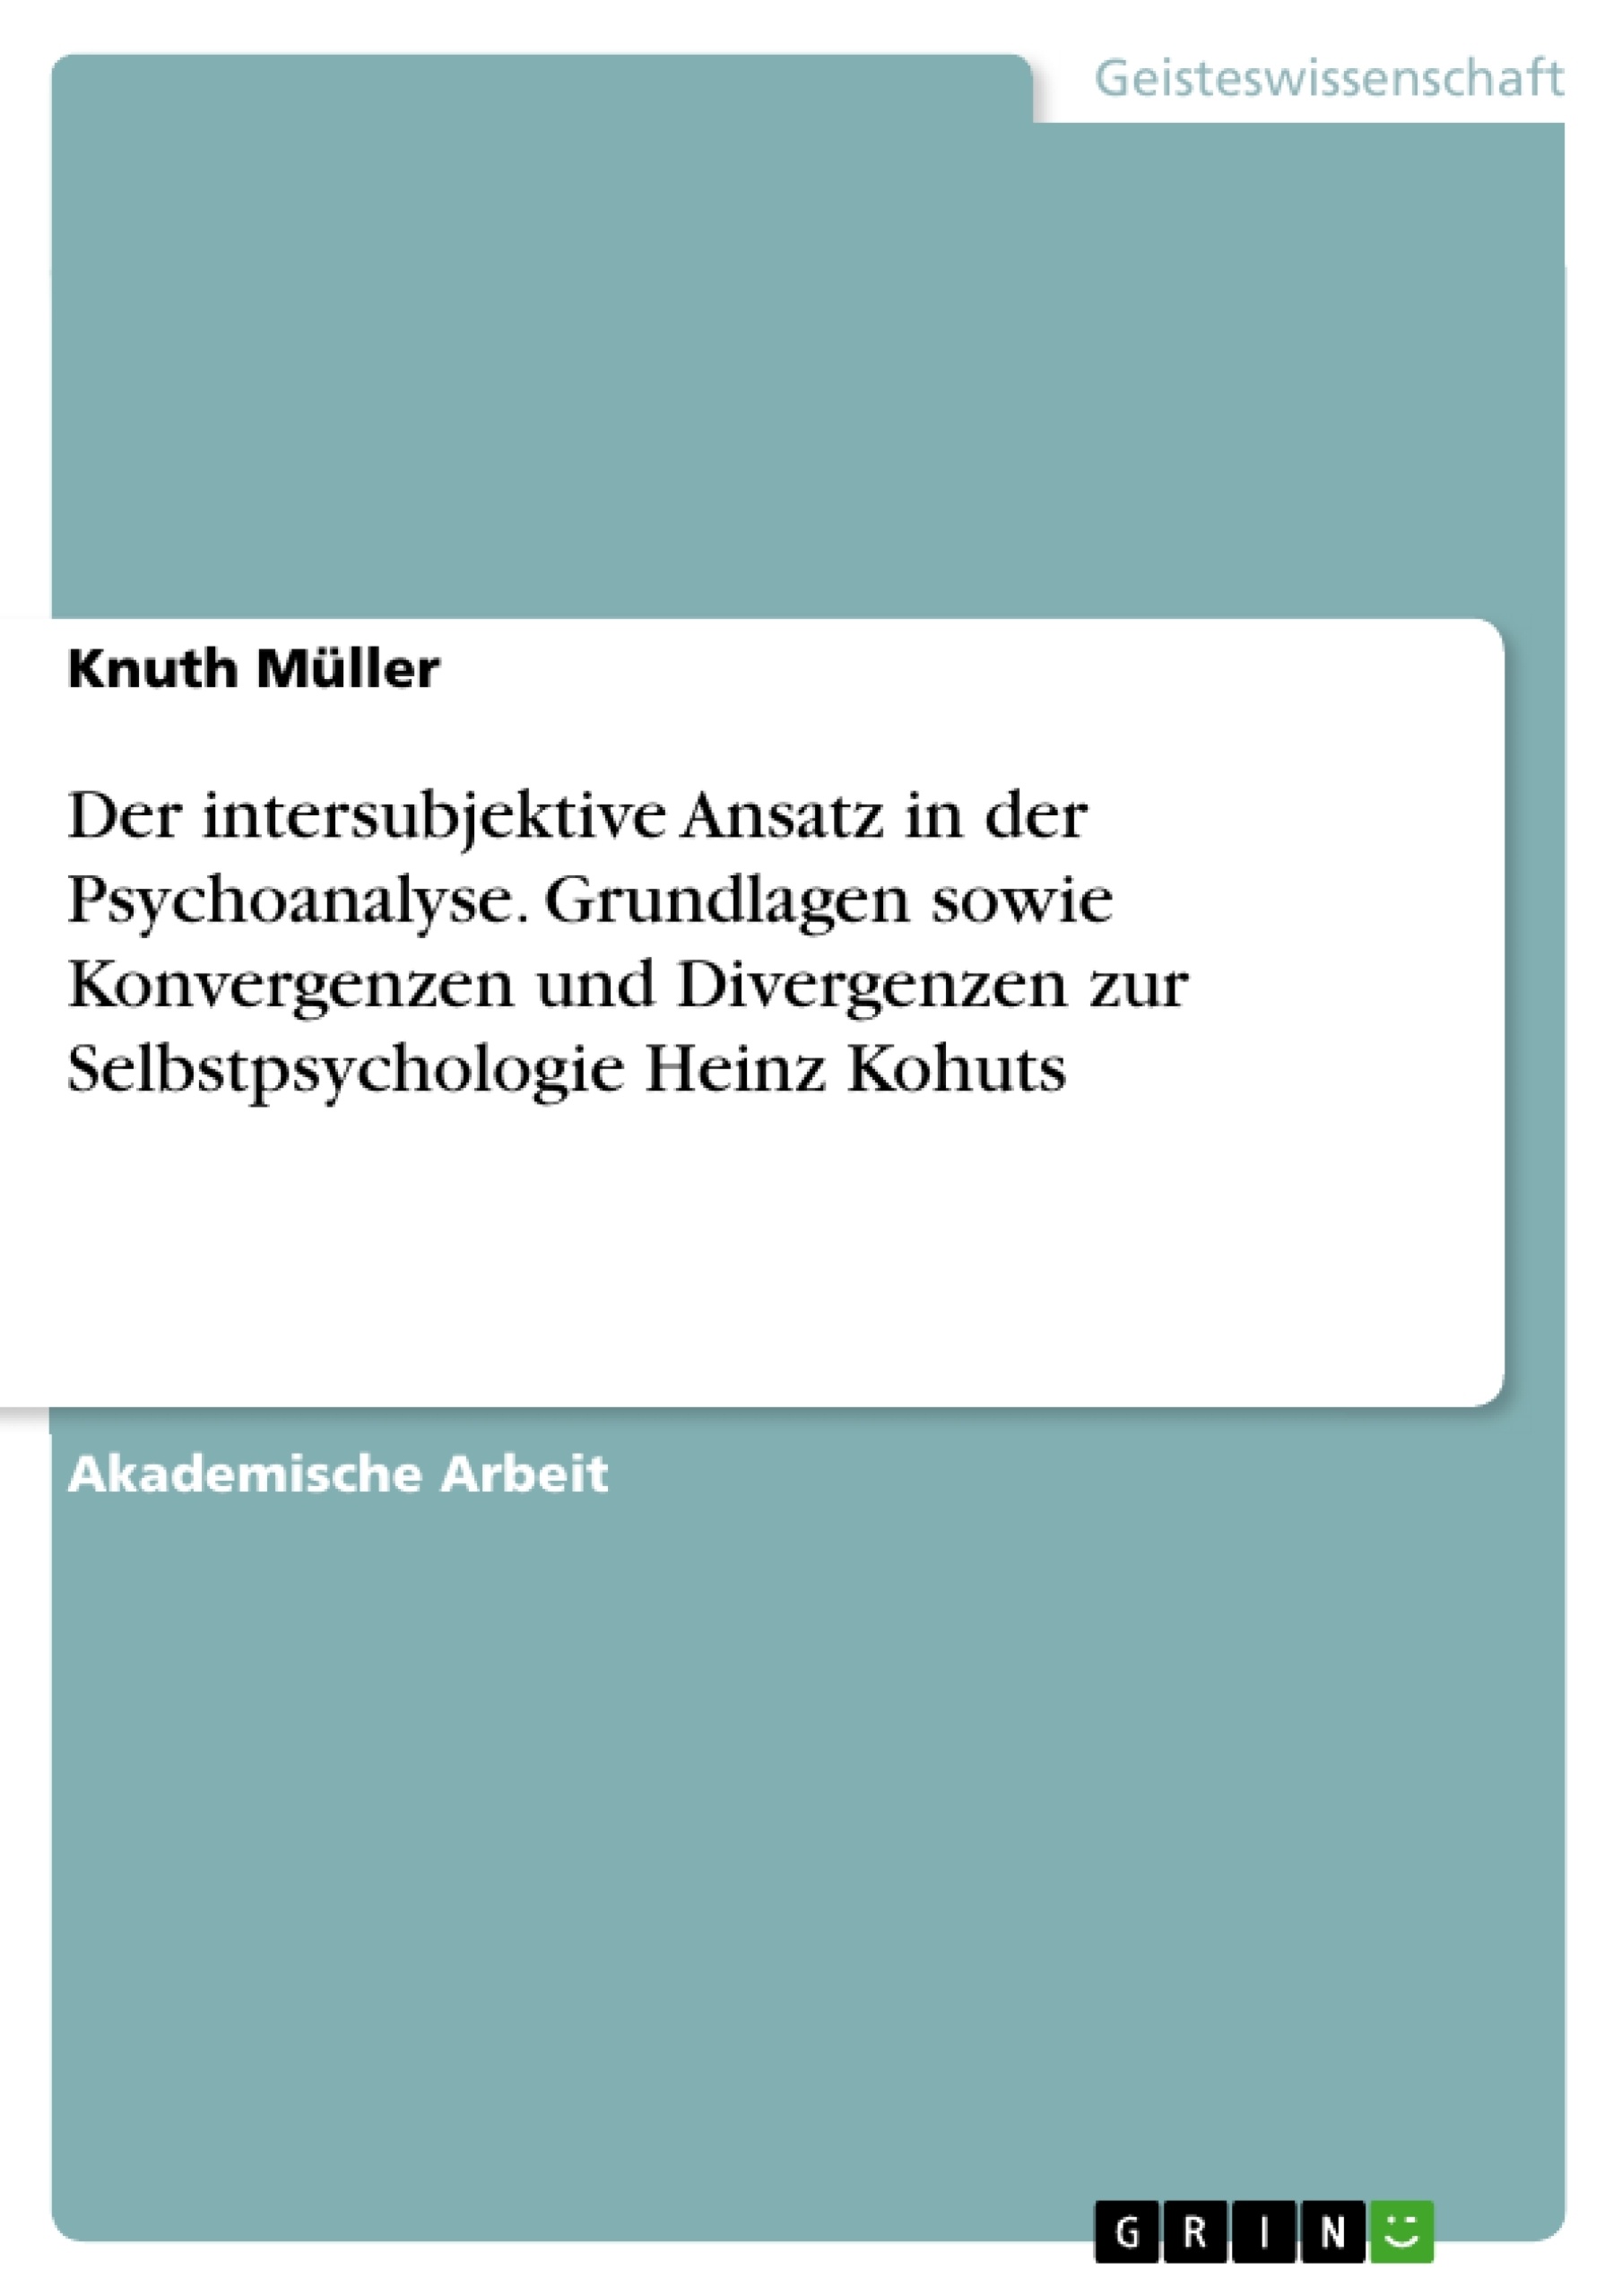 Título: Der intersubjektive Ansatz in der Psychoanalyse. Grundlagen sowie Konvergenzen und Divergenzen zur Selbstpsychologie Heinz Kohuts